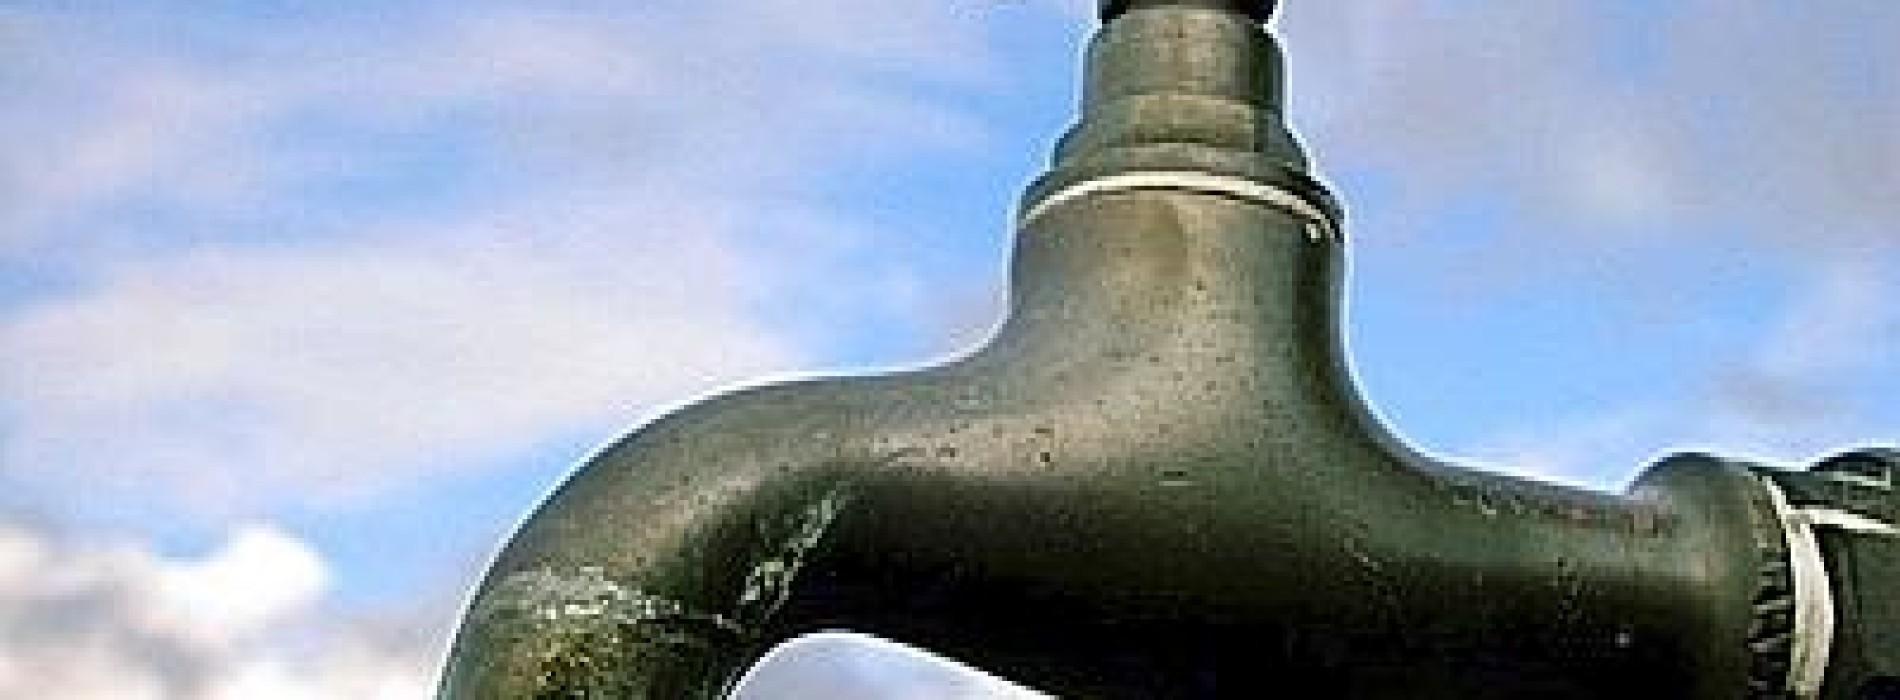 Interruzione idrica fino a Lunedì 21 Novembre